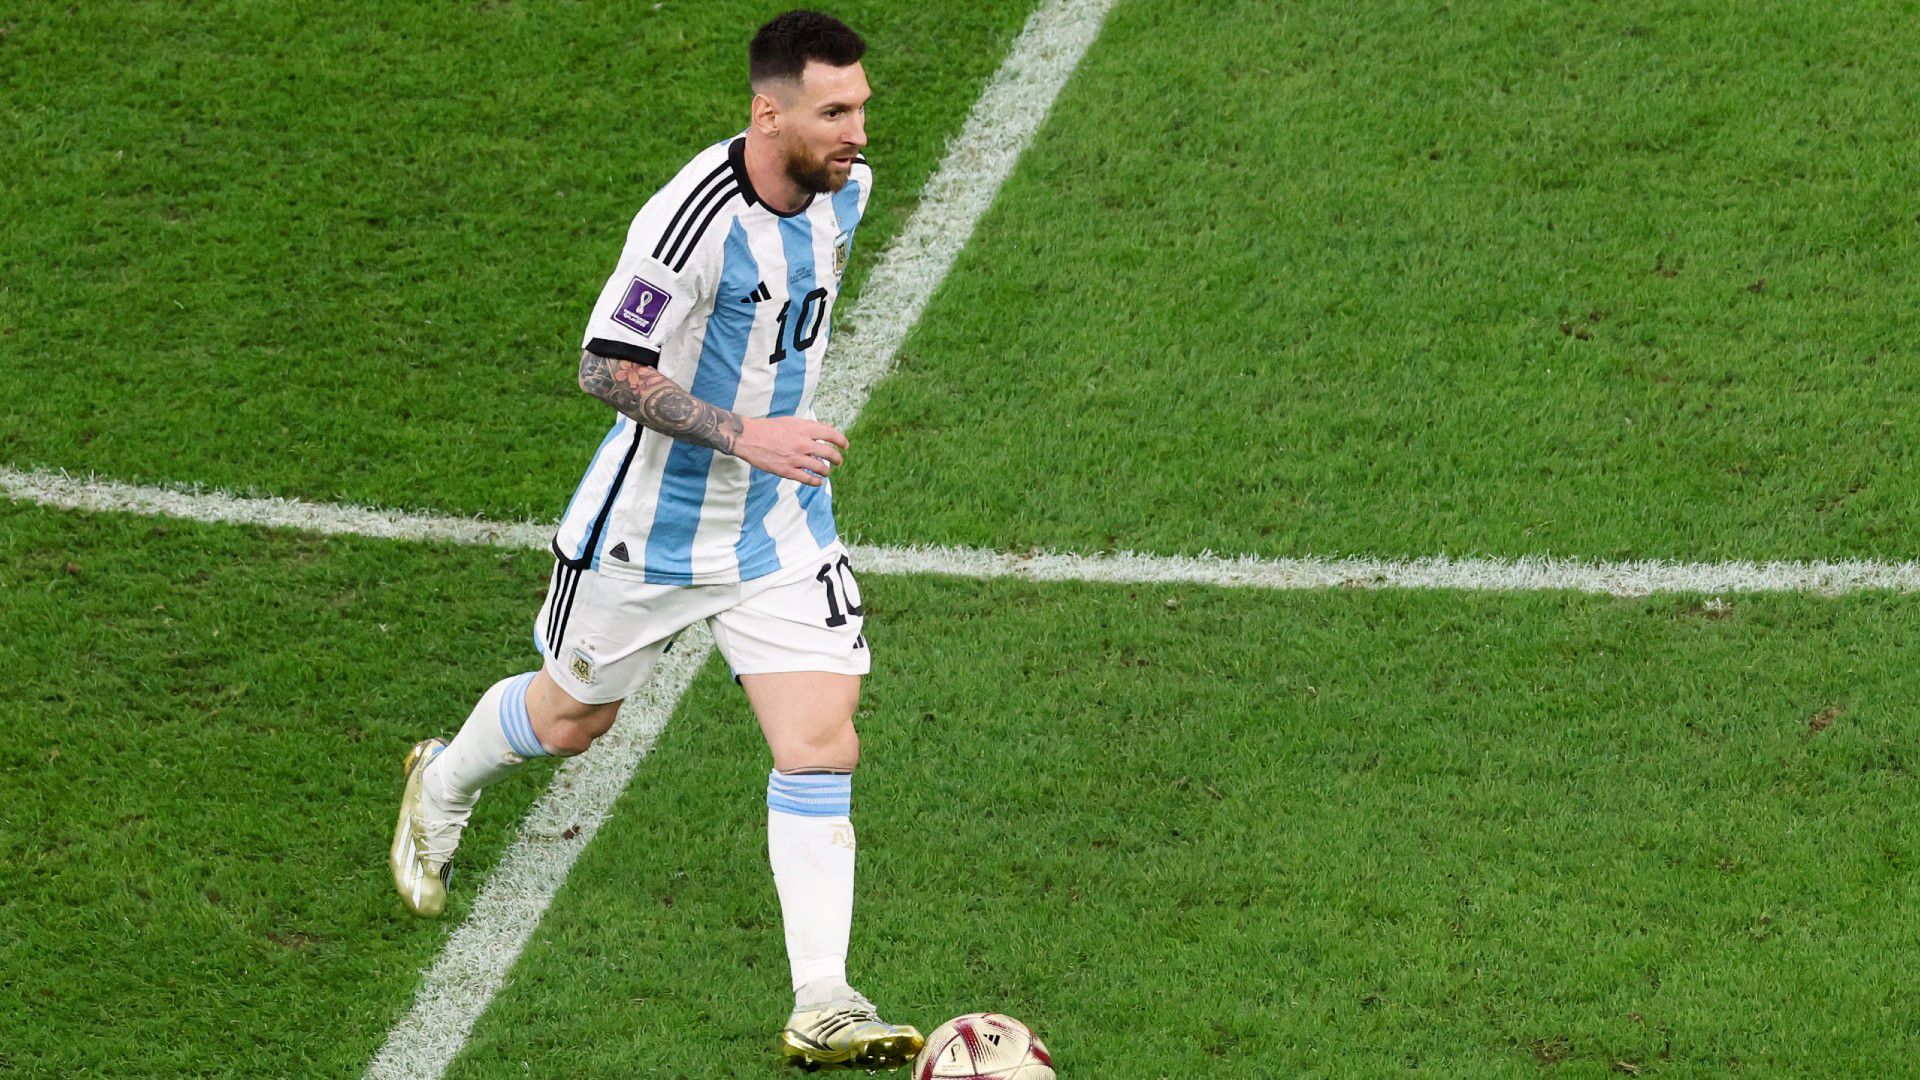 Botka Endre emléke Lionel Messiről: „A legrosszabb, hogy nem nagyon lehet közel kerülni hozzá”